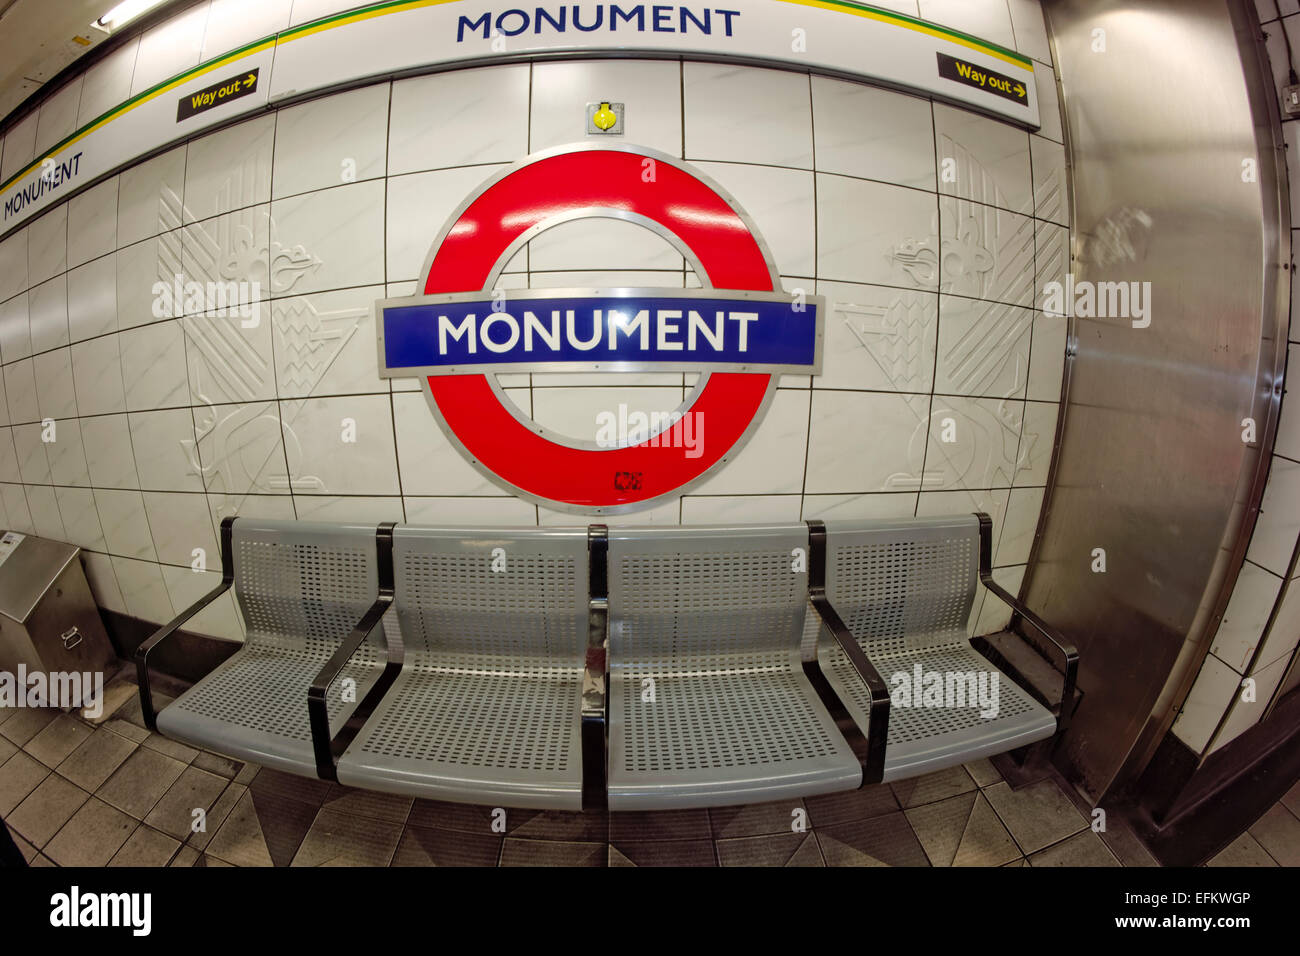 Monumento, la stazione della metropolitana, tubo, London , Regno Unito Foto Stock